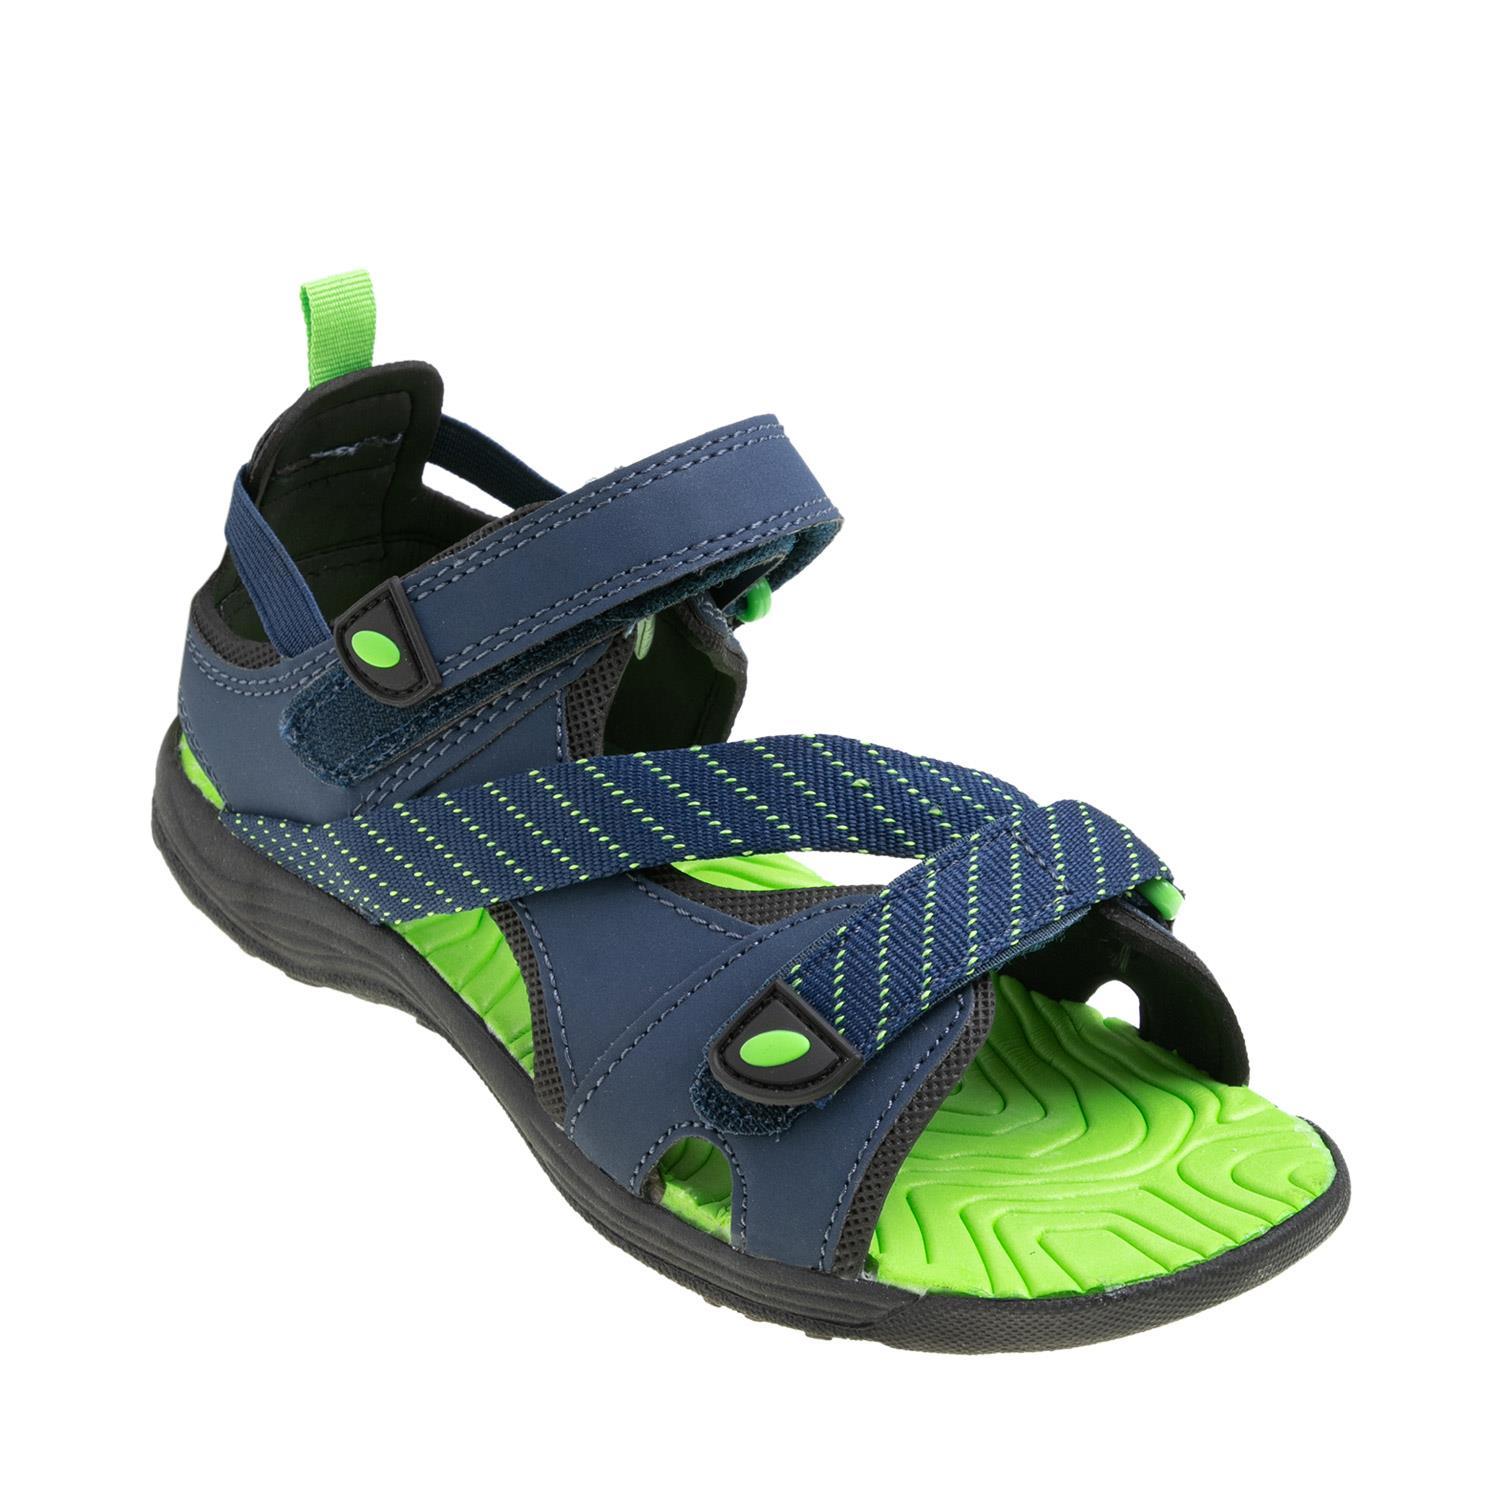 ROBO รองเท้าแตะรัดส้นเด็กผู้ชาย Smartfit Double Strap Sport Sandal รุ่น 171727 สีกรมท่า ไซส์ US 8